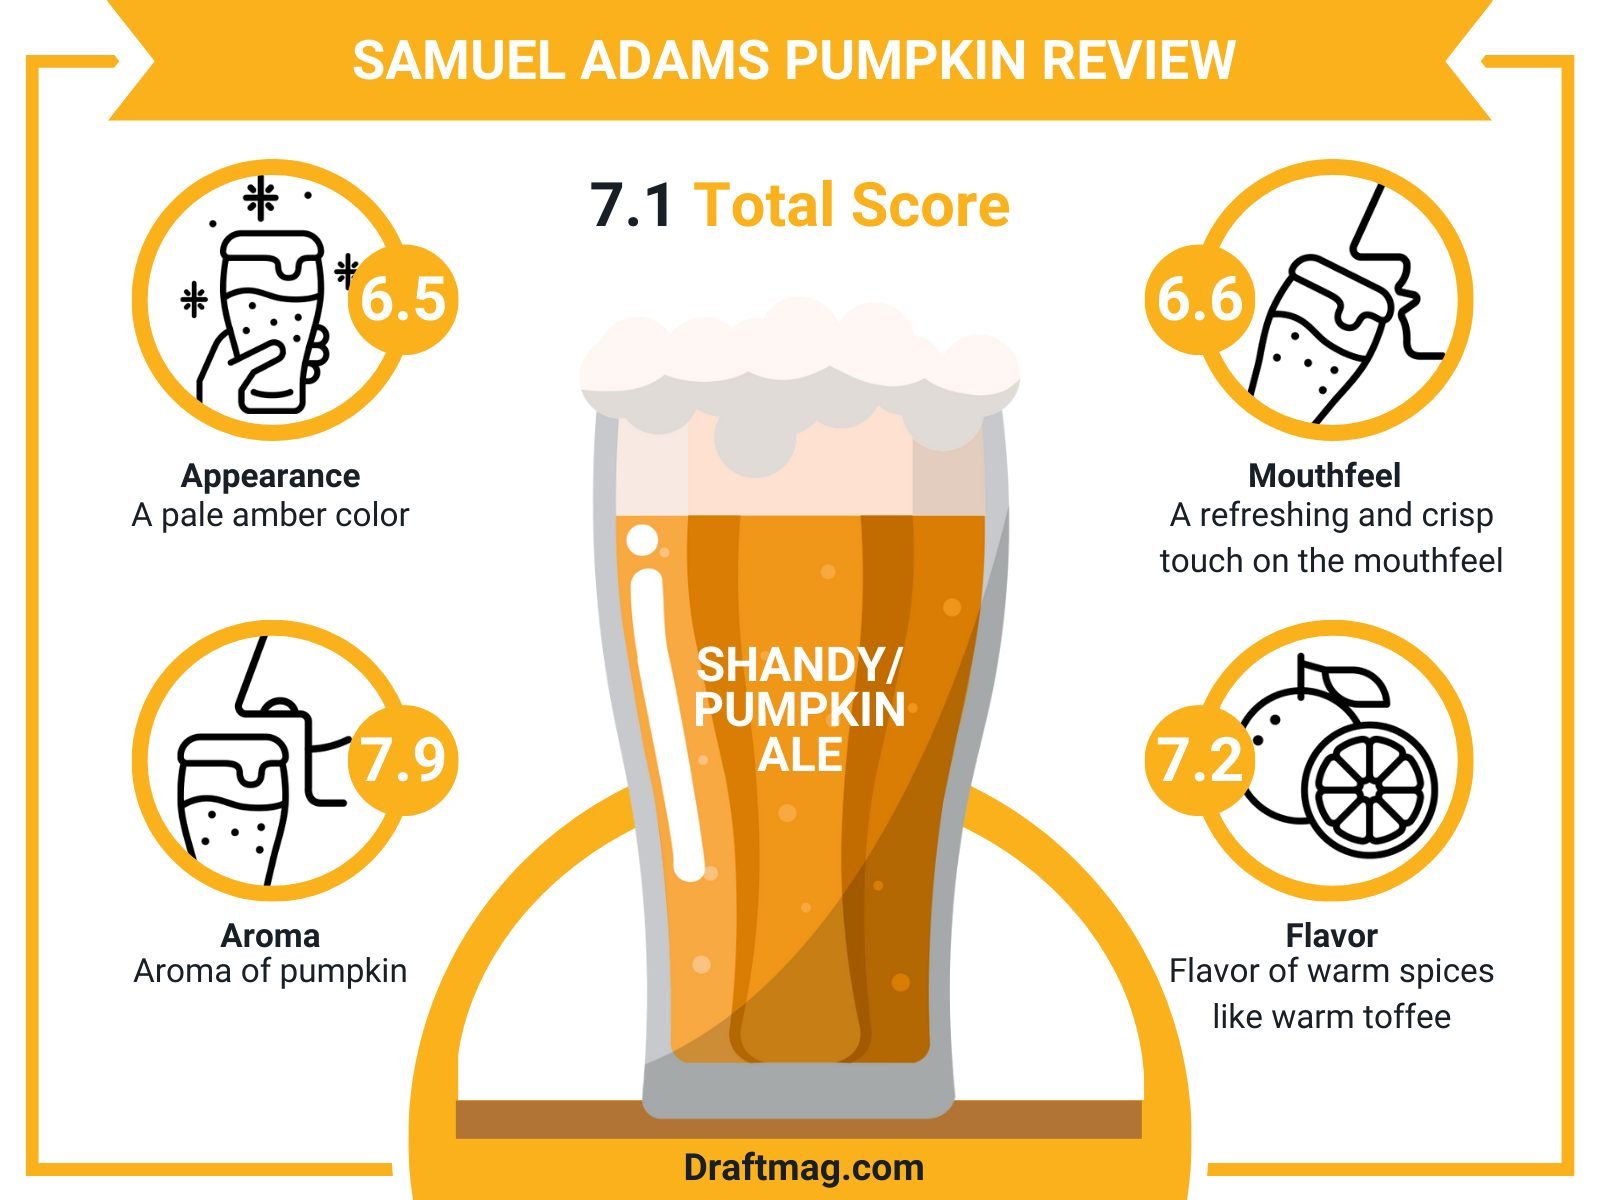 Samuel Adams Pumpkin Review Infographic